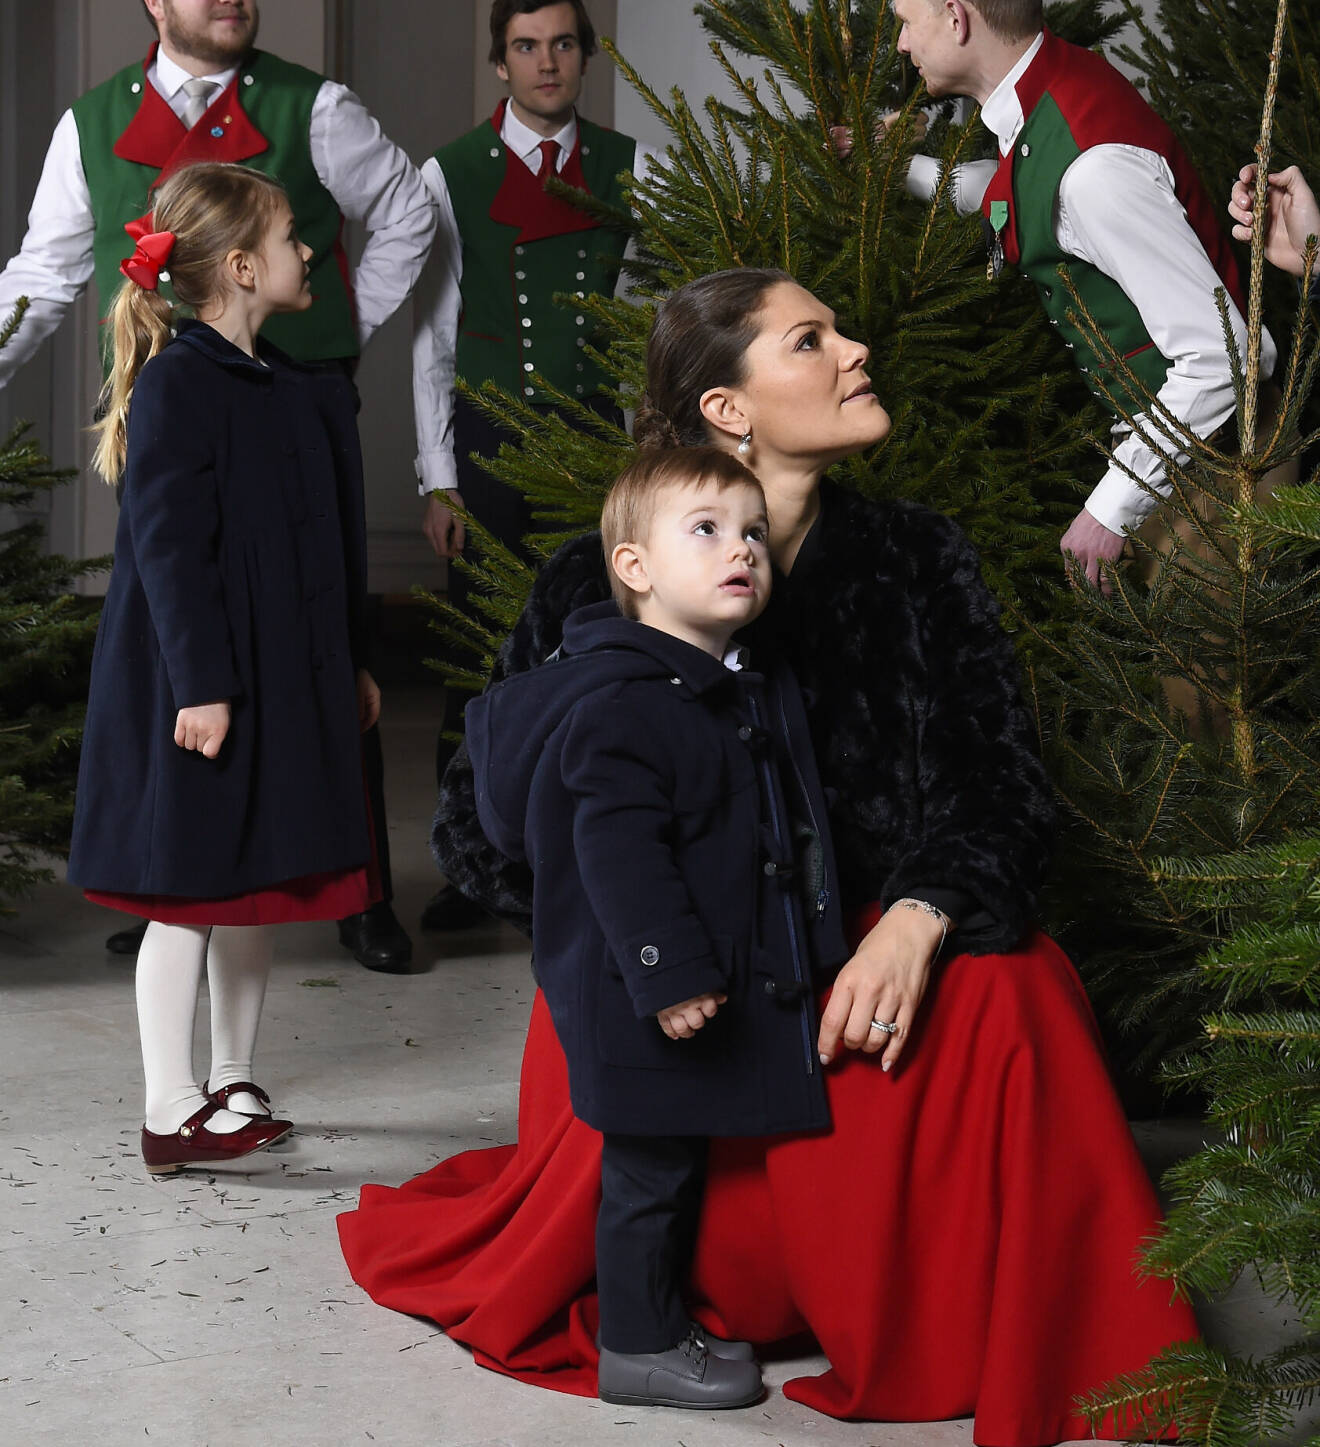 Prinsessan Estelle och prins Oscar framför julgranar på slottet